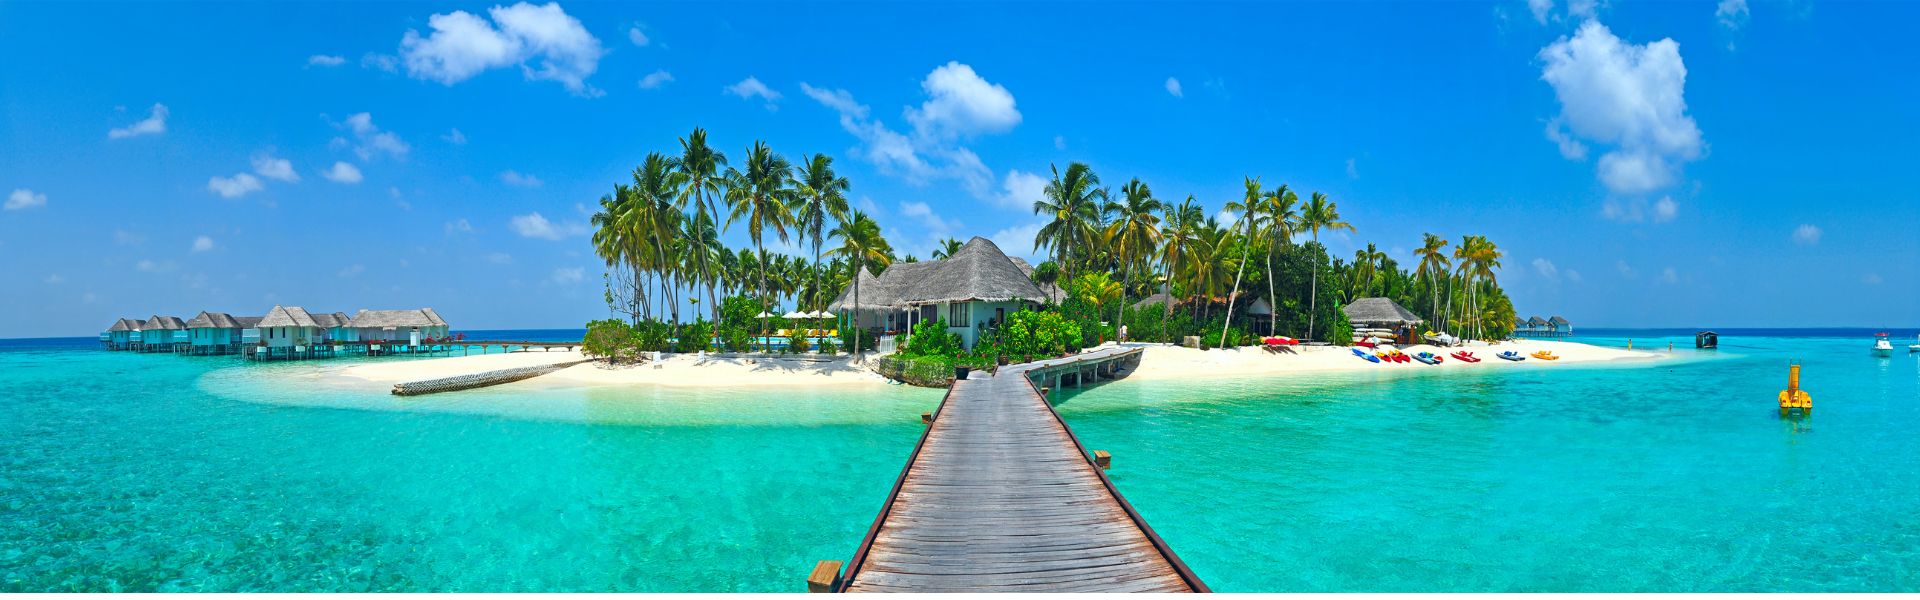 Kinh nghiệm du lịch Maldives tự túc - Thiên đường của những giấc mơ biển